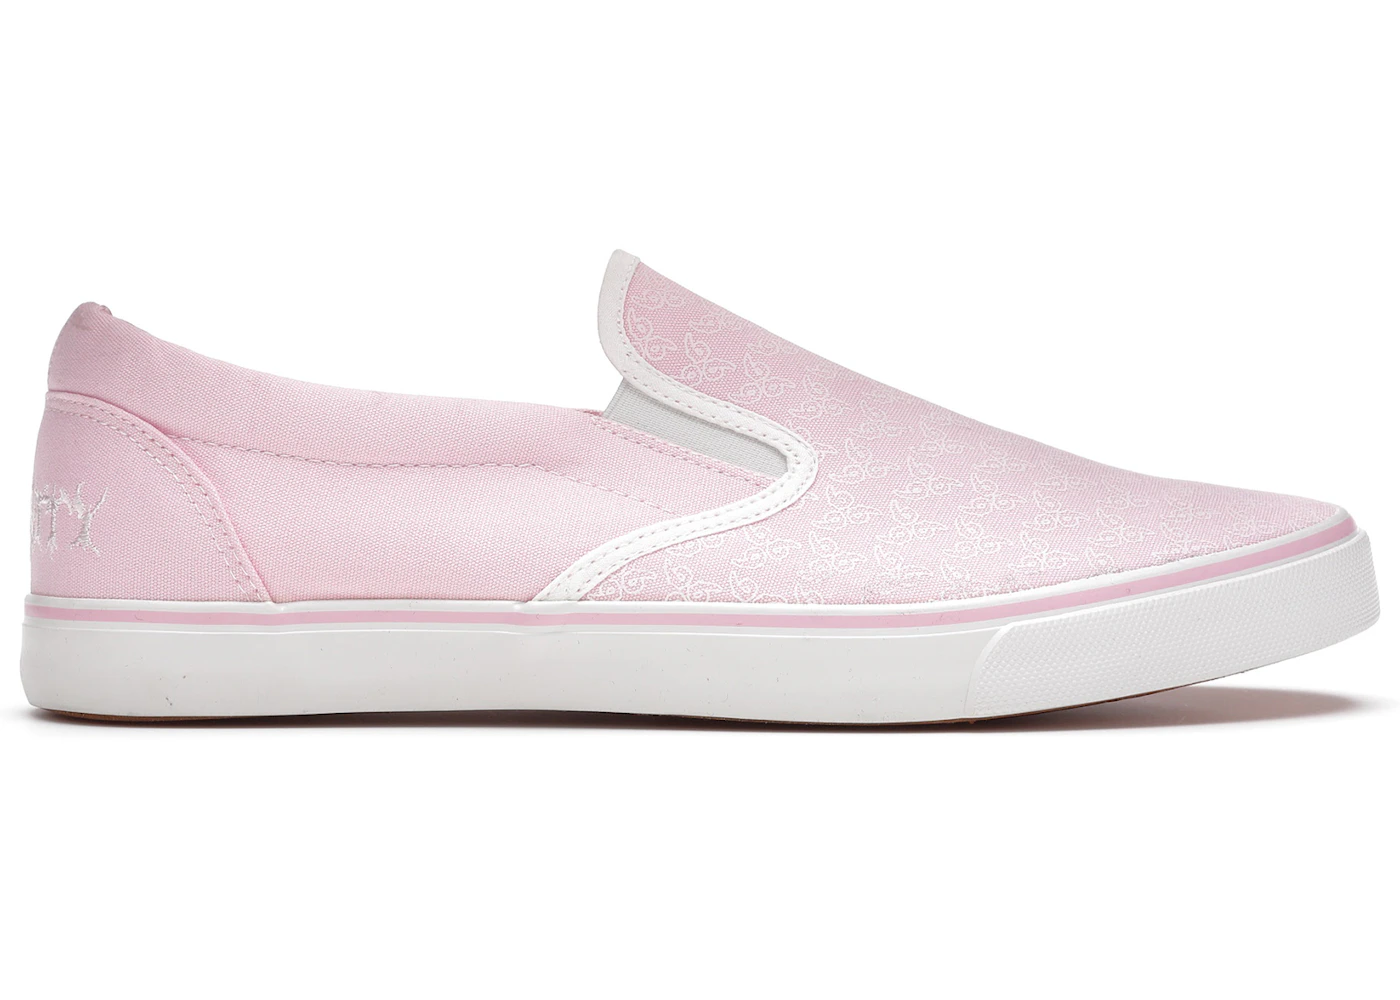 Juice WRLD 999 No Vanity Shoe Pink Men's - Sneakers - US